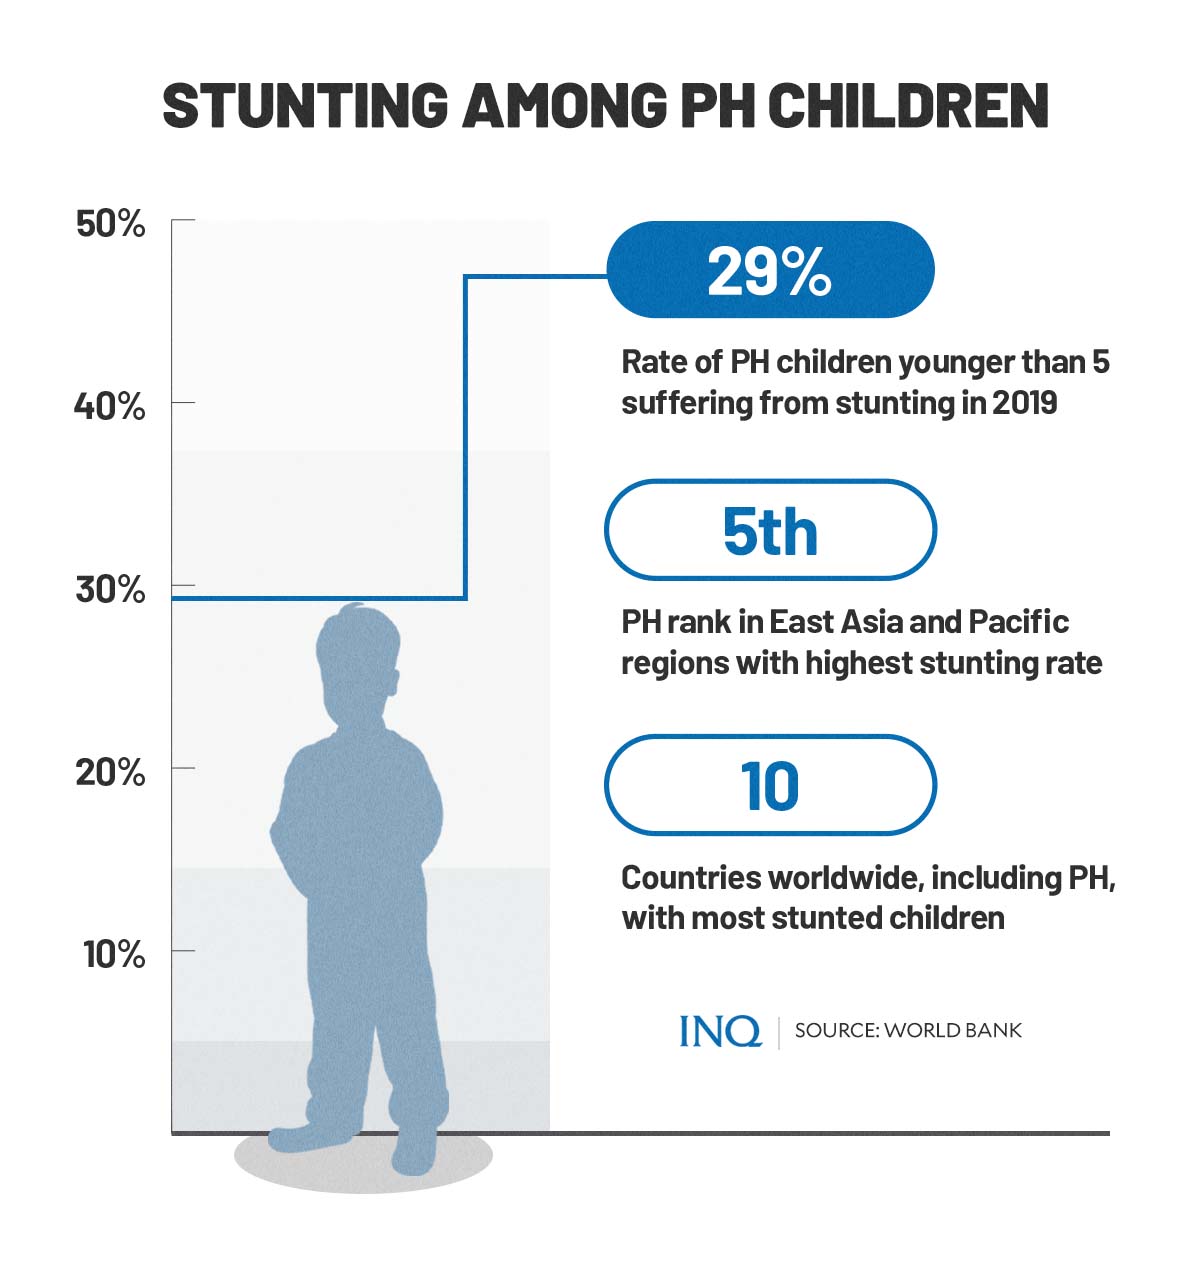 Stunting among PH children